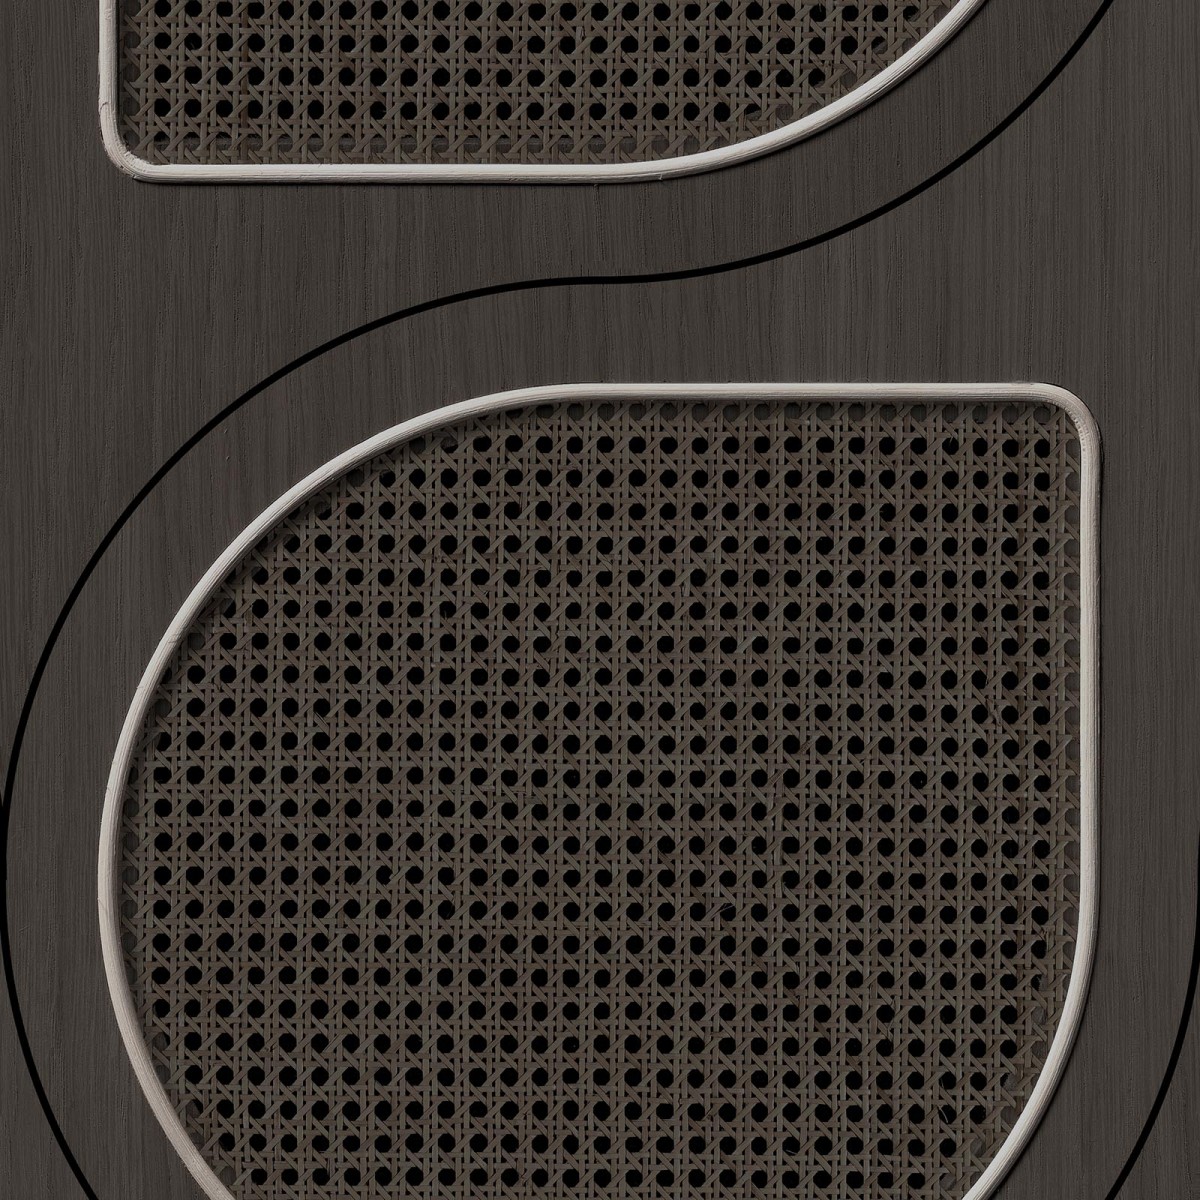 Tapet designer VOS Drops Cane Webbing, Black by Roderick Vos, NLXL, 4.87mp/rola, Tapet living 